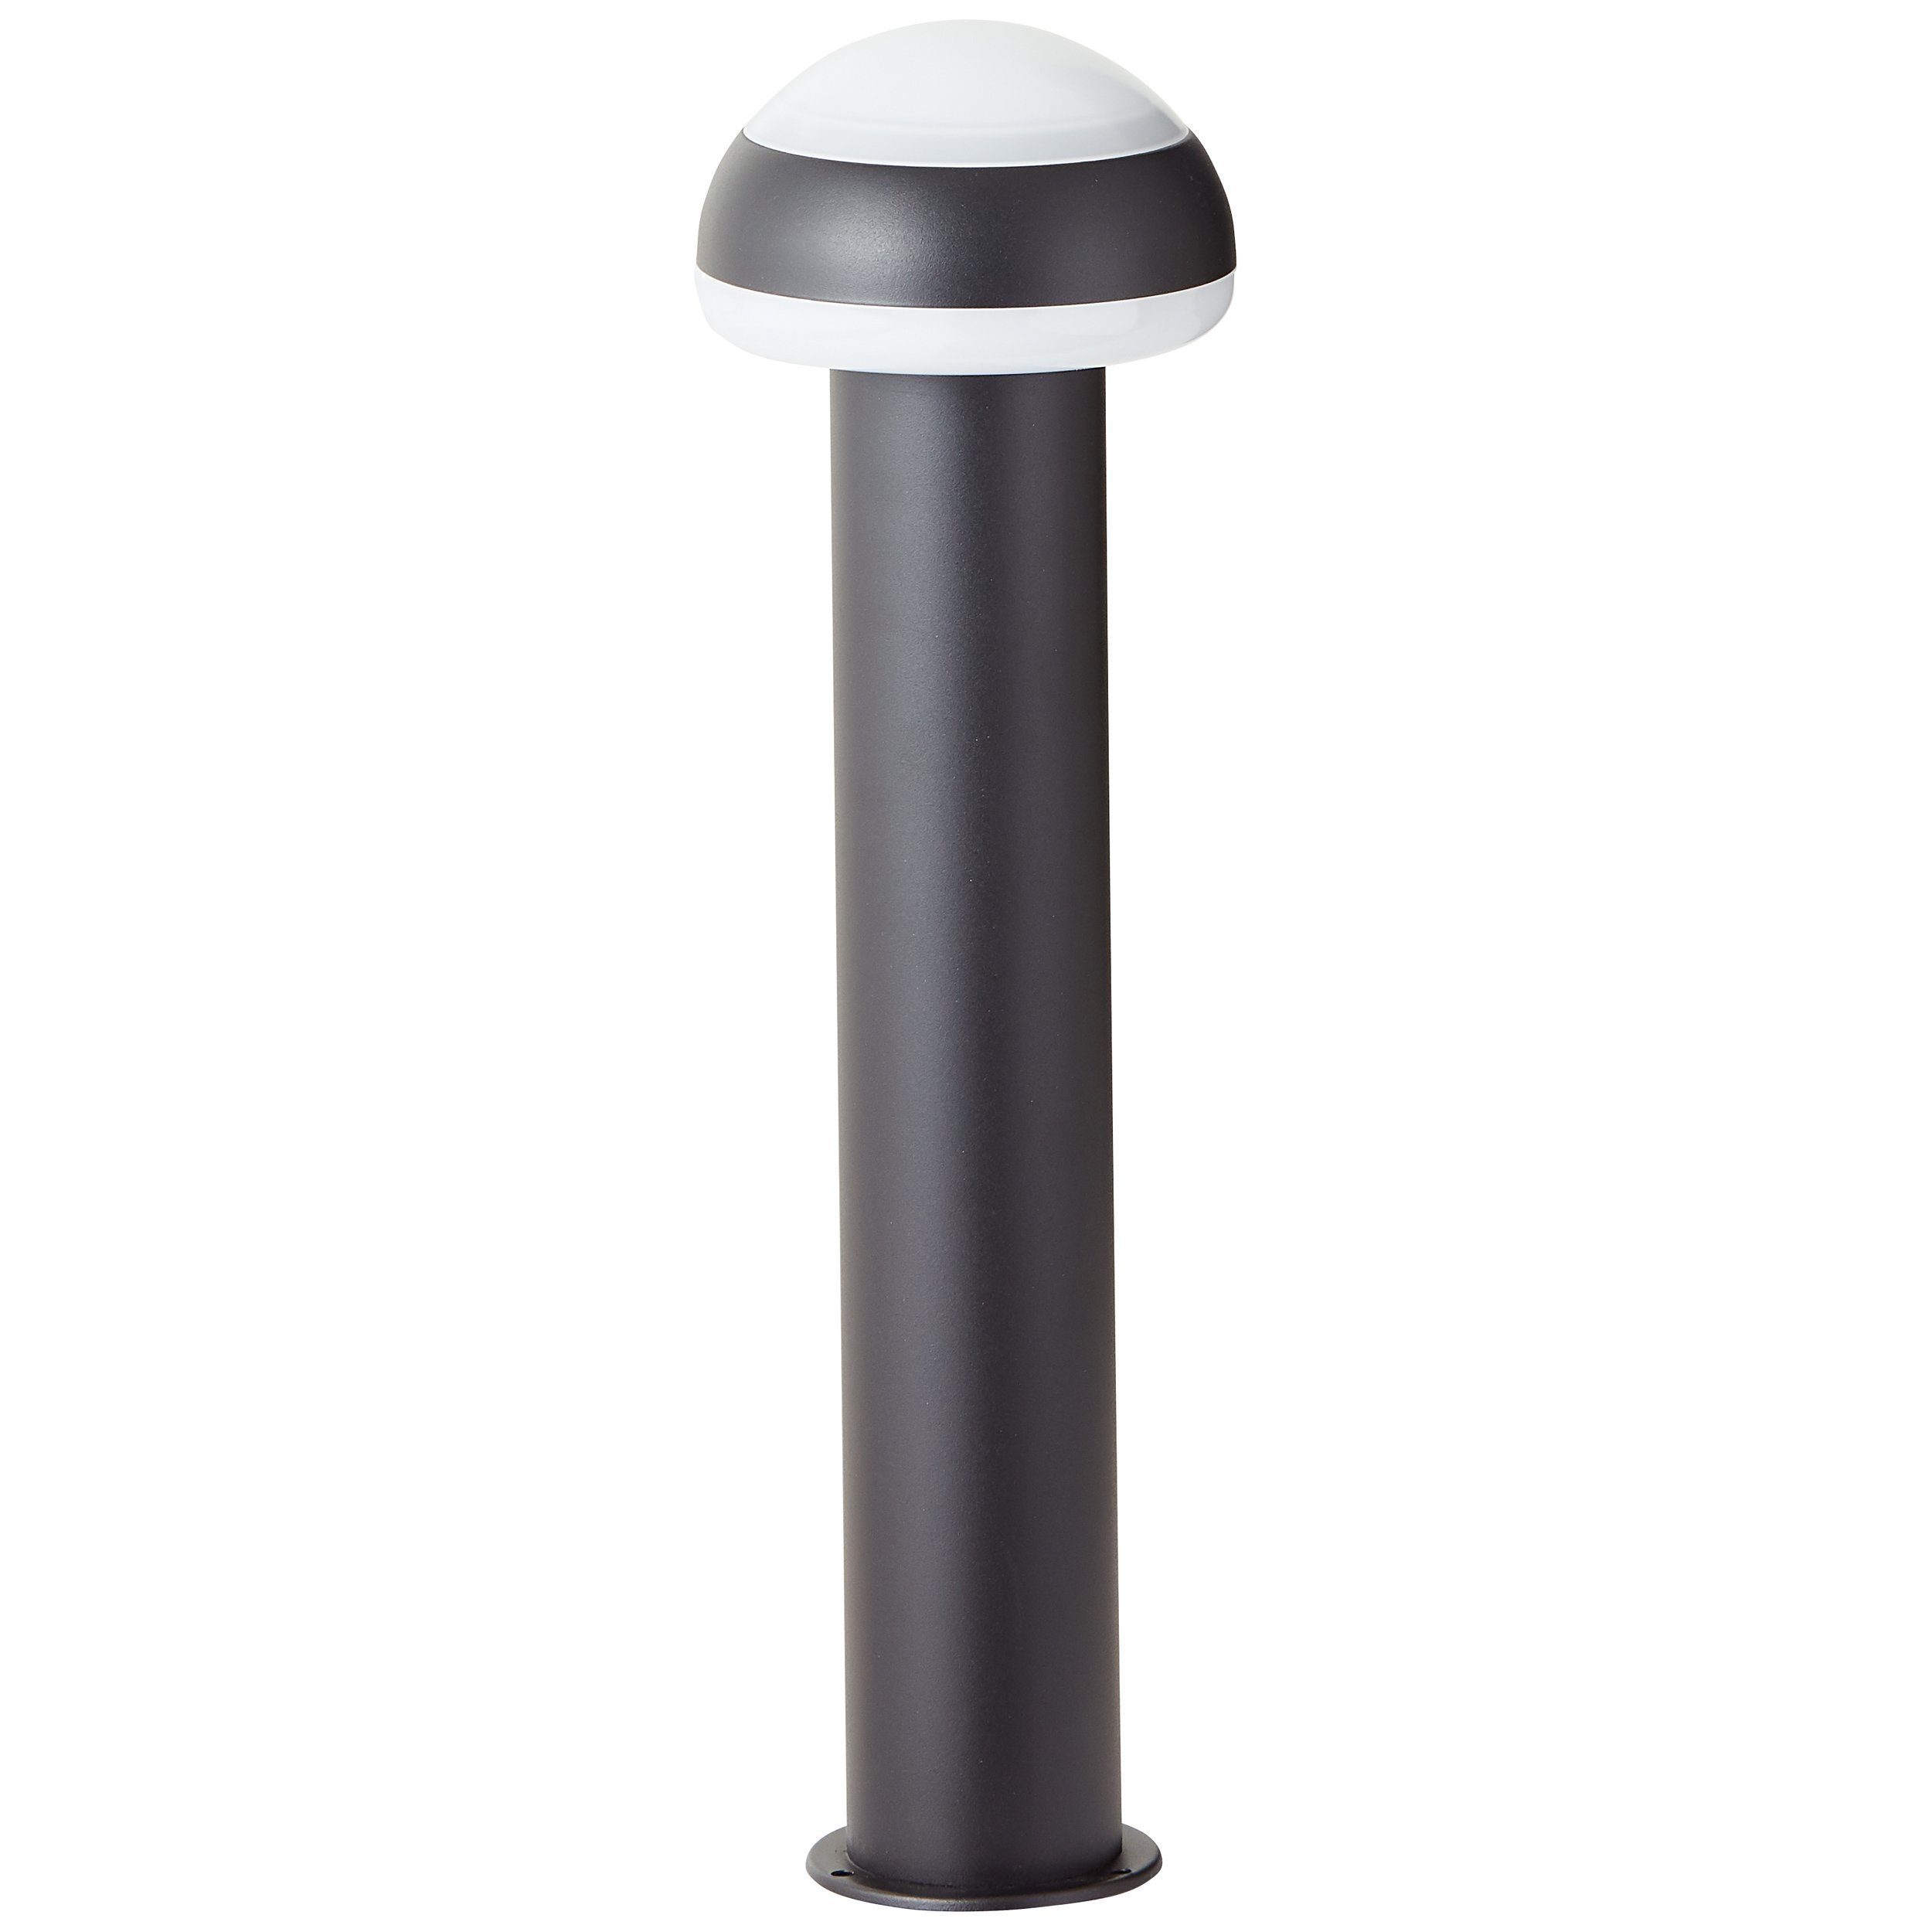 Brilliant Außen-Stehlampe Ilton, Ilton LED 50cm sand schwarz, Edelstahl/Kunststoff Außensockelleuchte